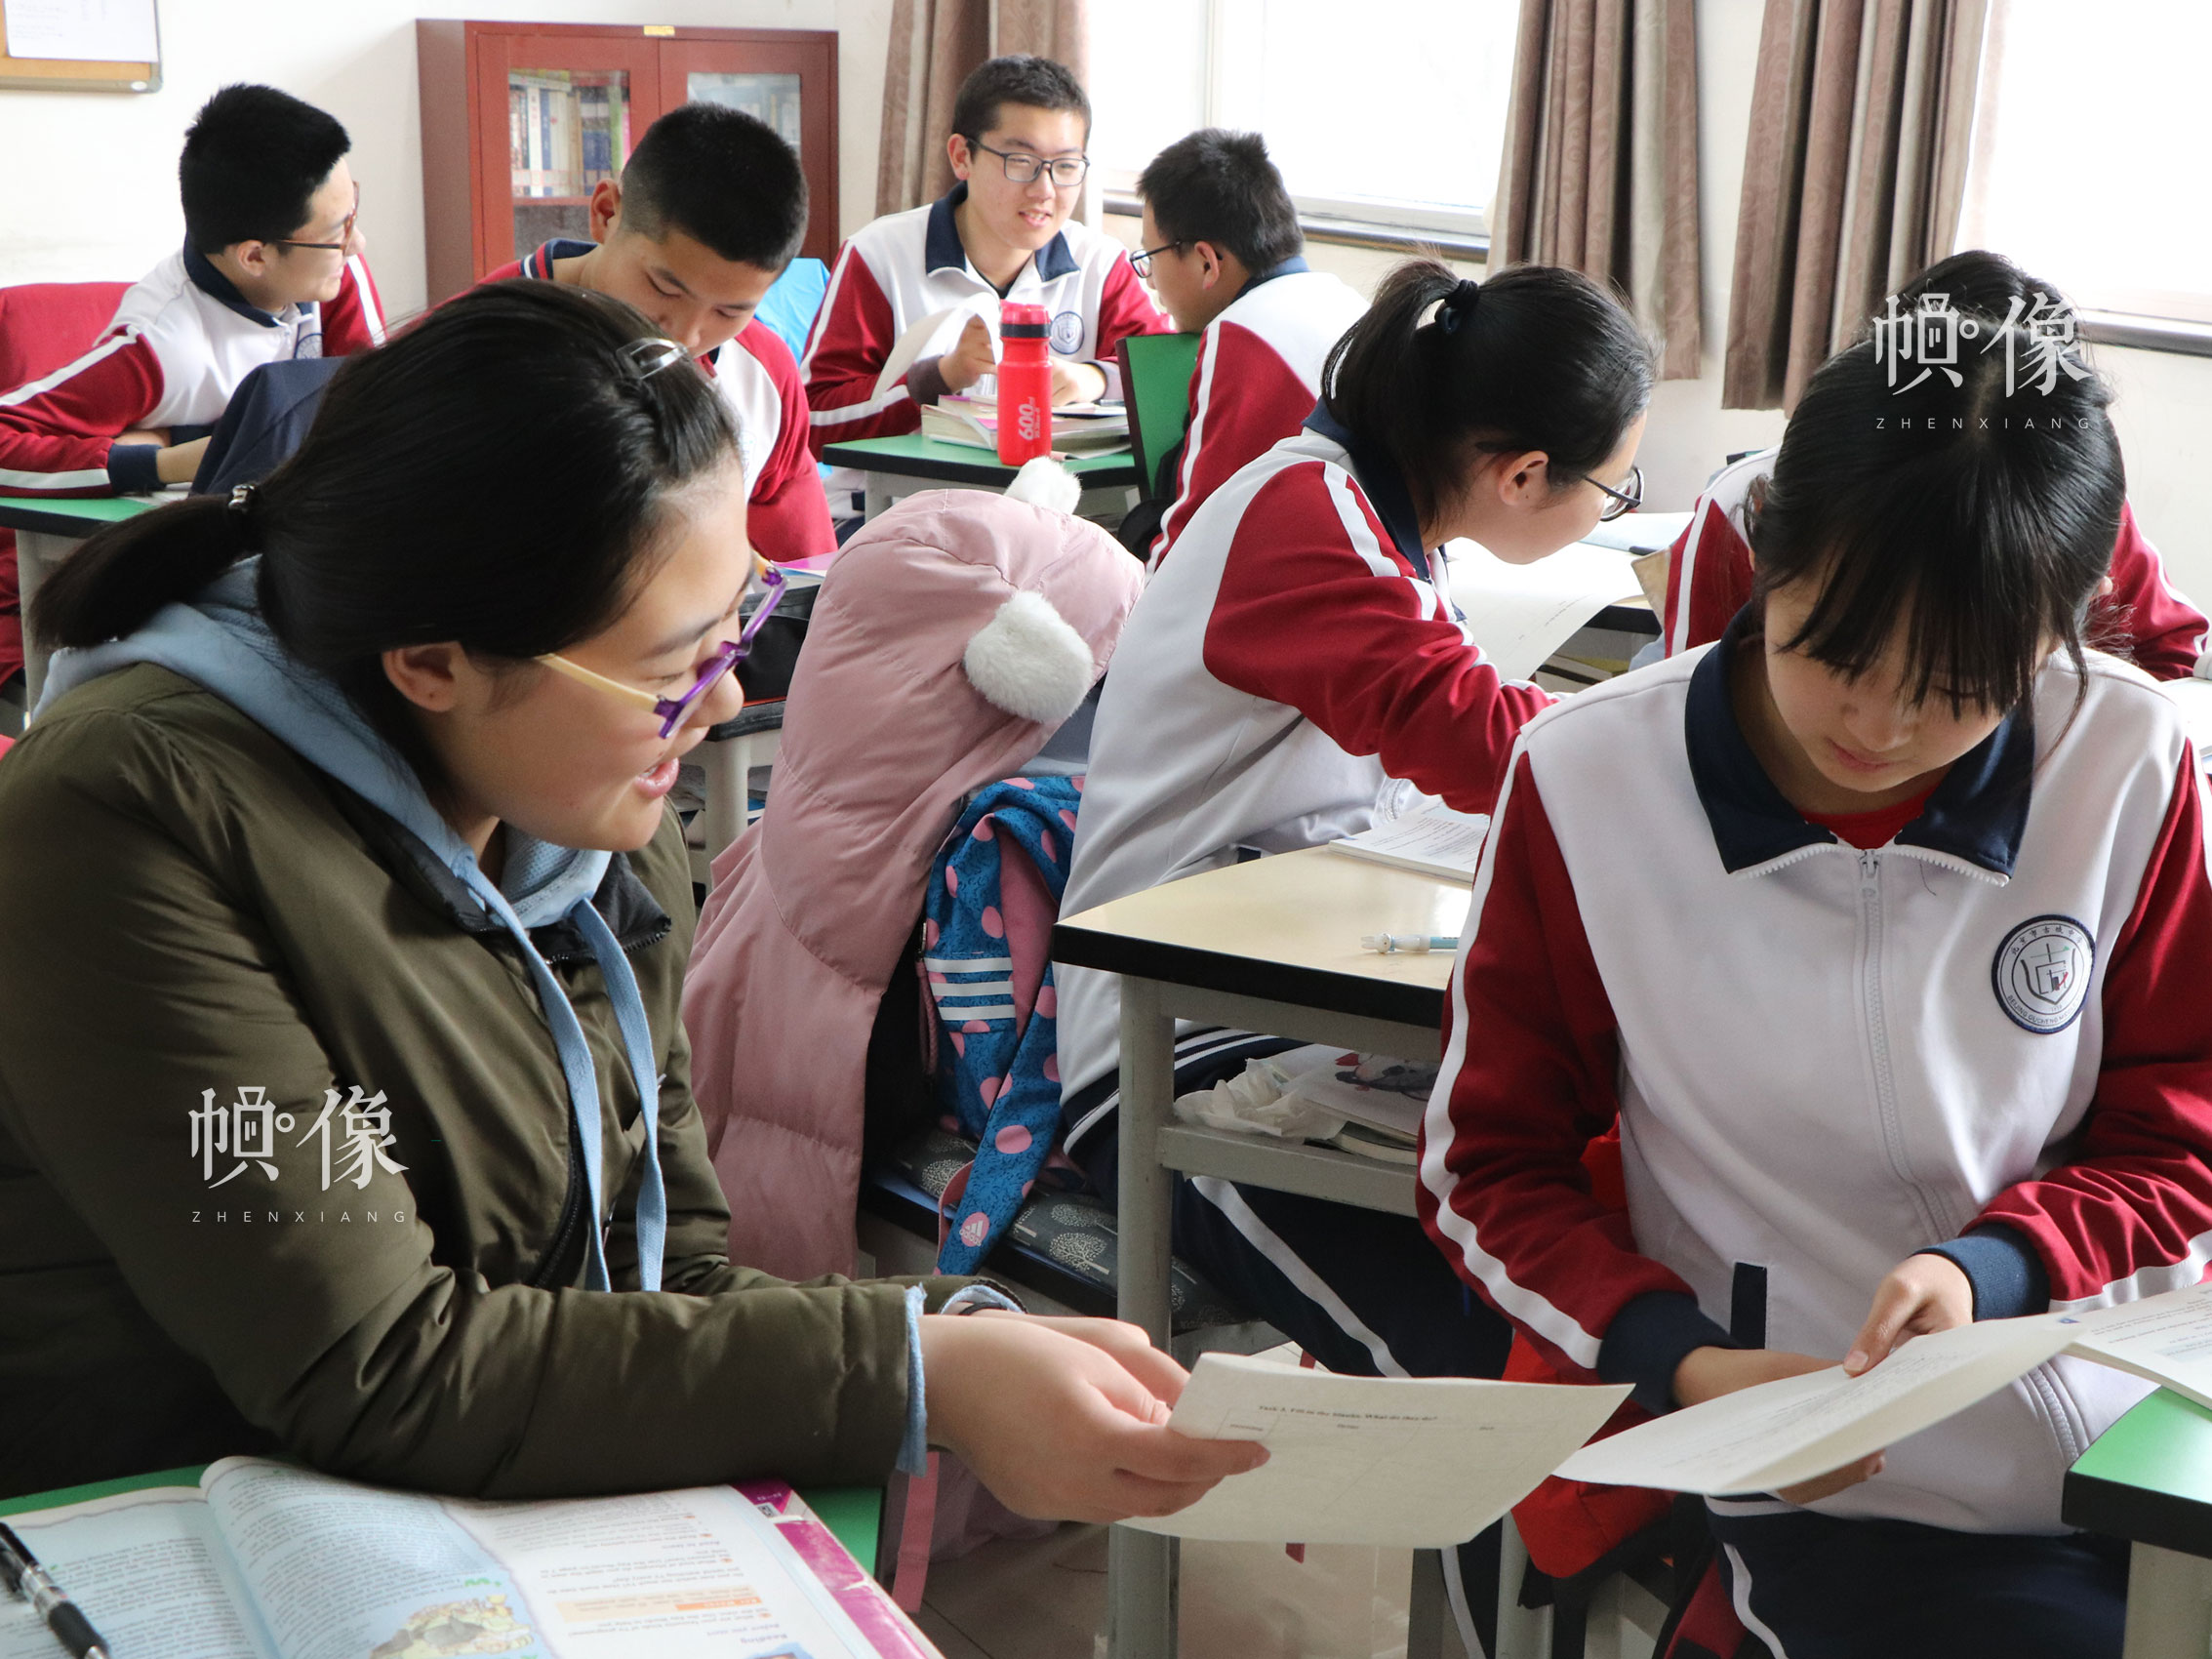 北京市石景山區某中學，課堂上學生們互相討論作業。中國網實習記者 韓依 攝